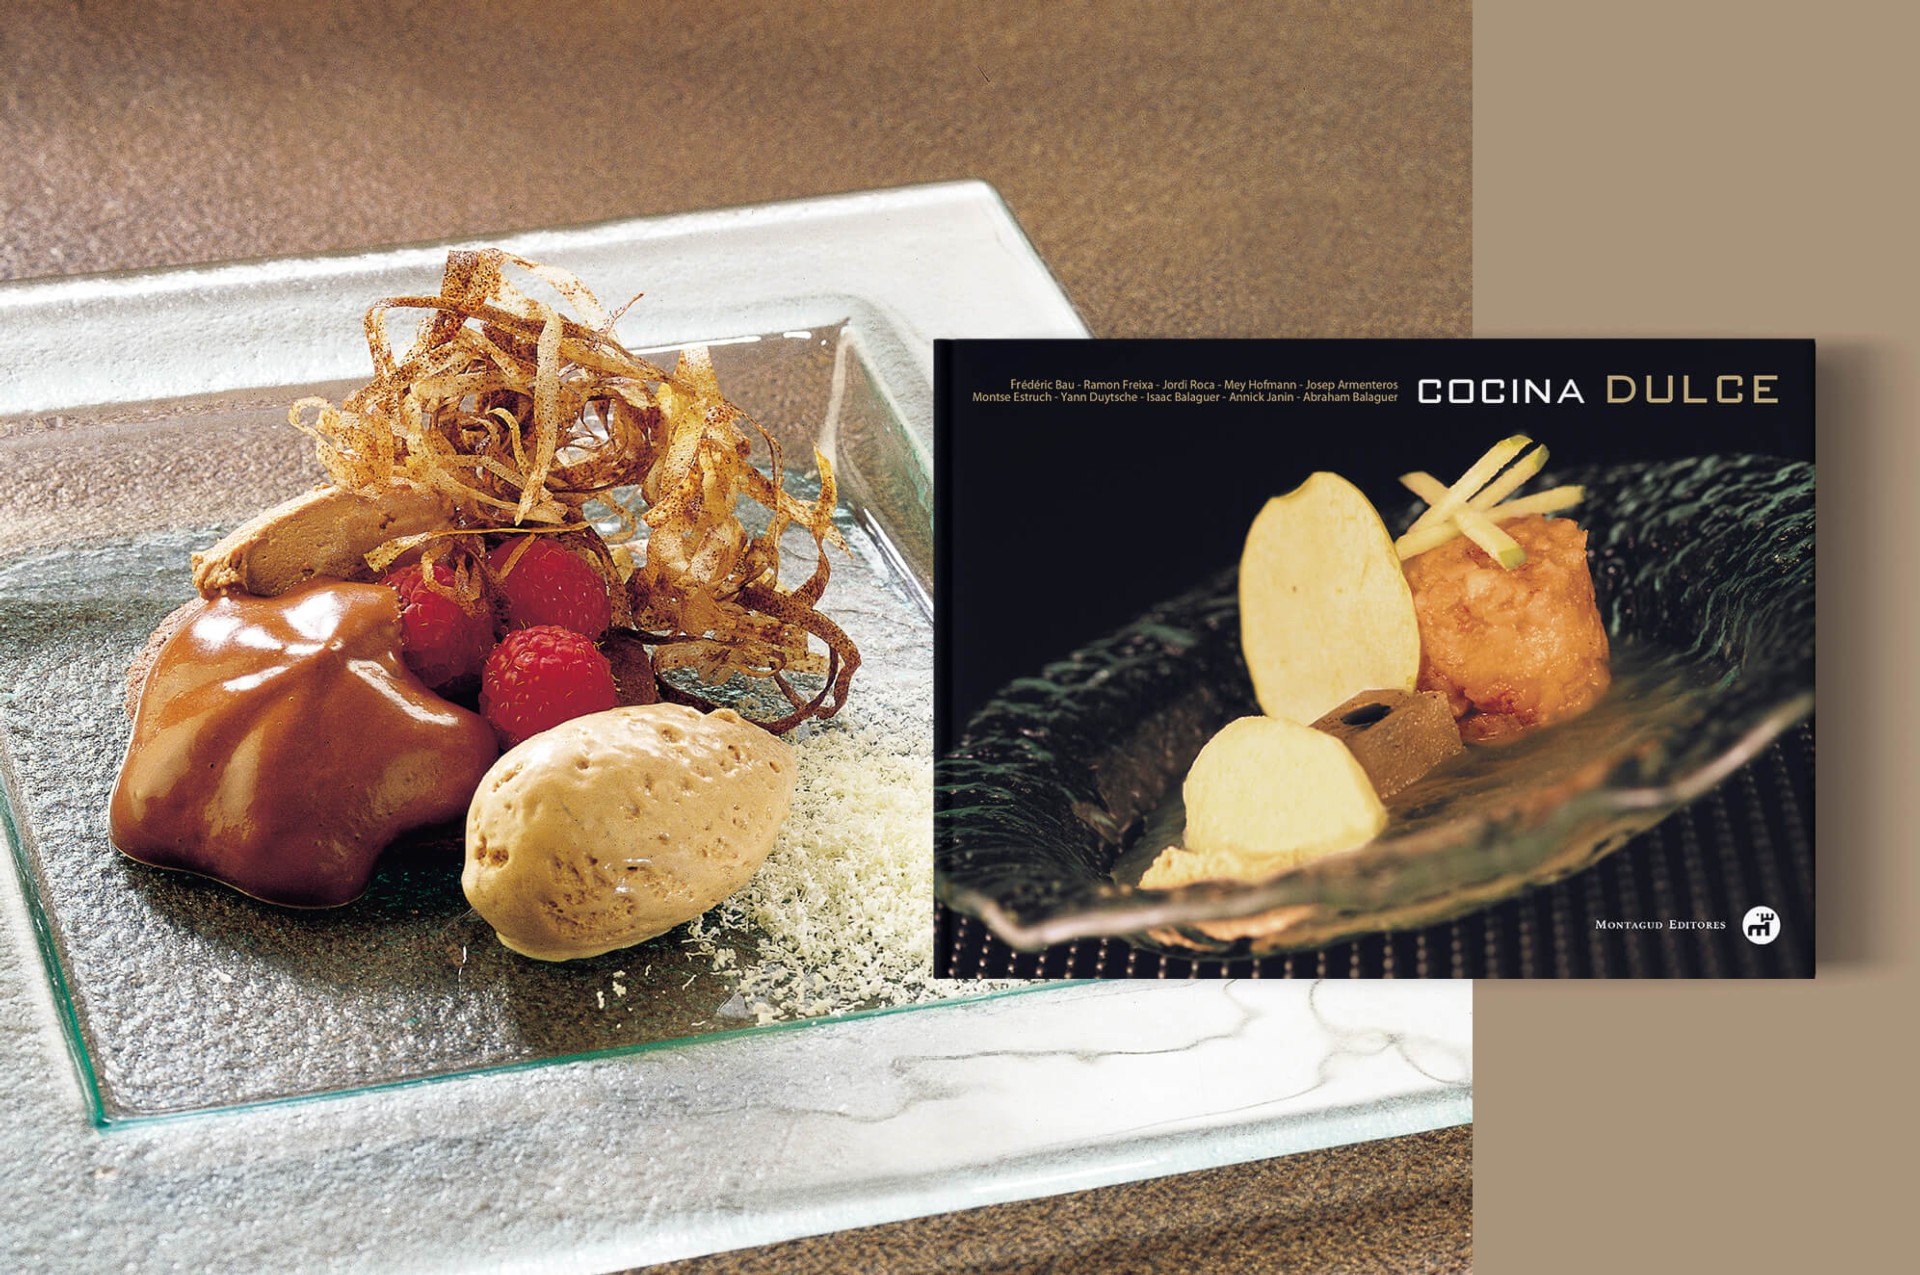 El ADN de nuestra gastronomía, en el libro Cocina valenciana. 101 recetas -  Gastronomía y turismo en Valencia gastronómica